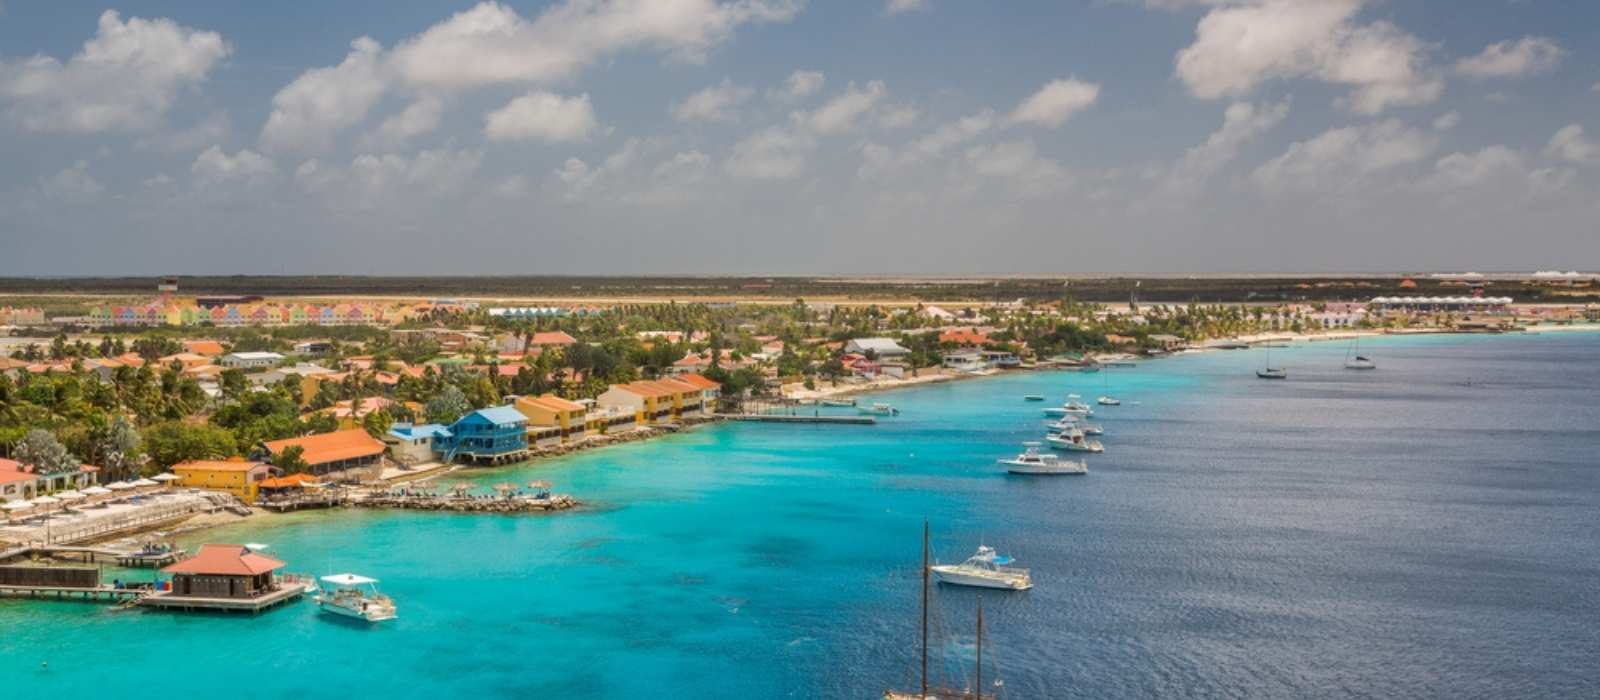 Accommodatie Bonaire